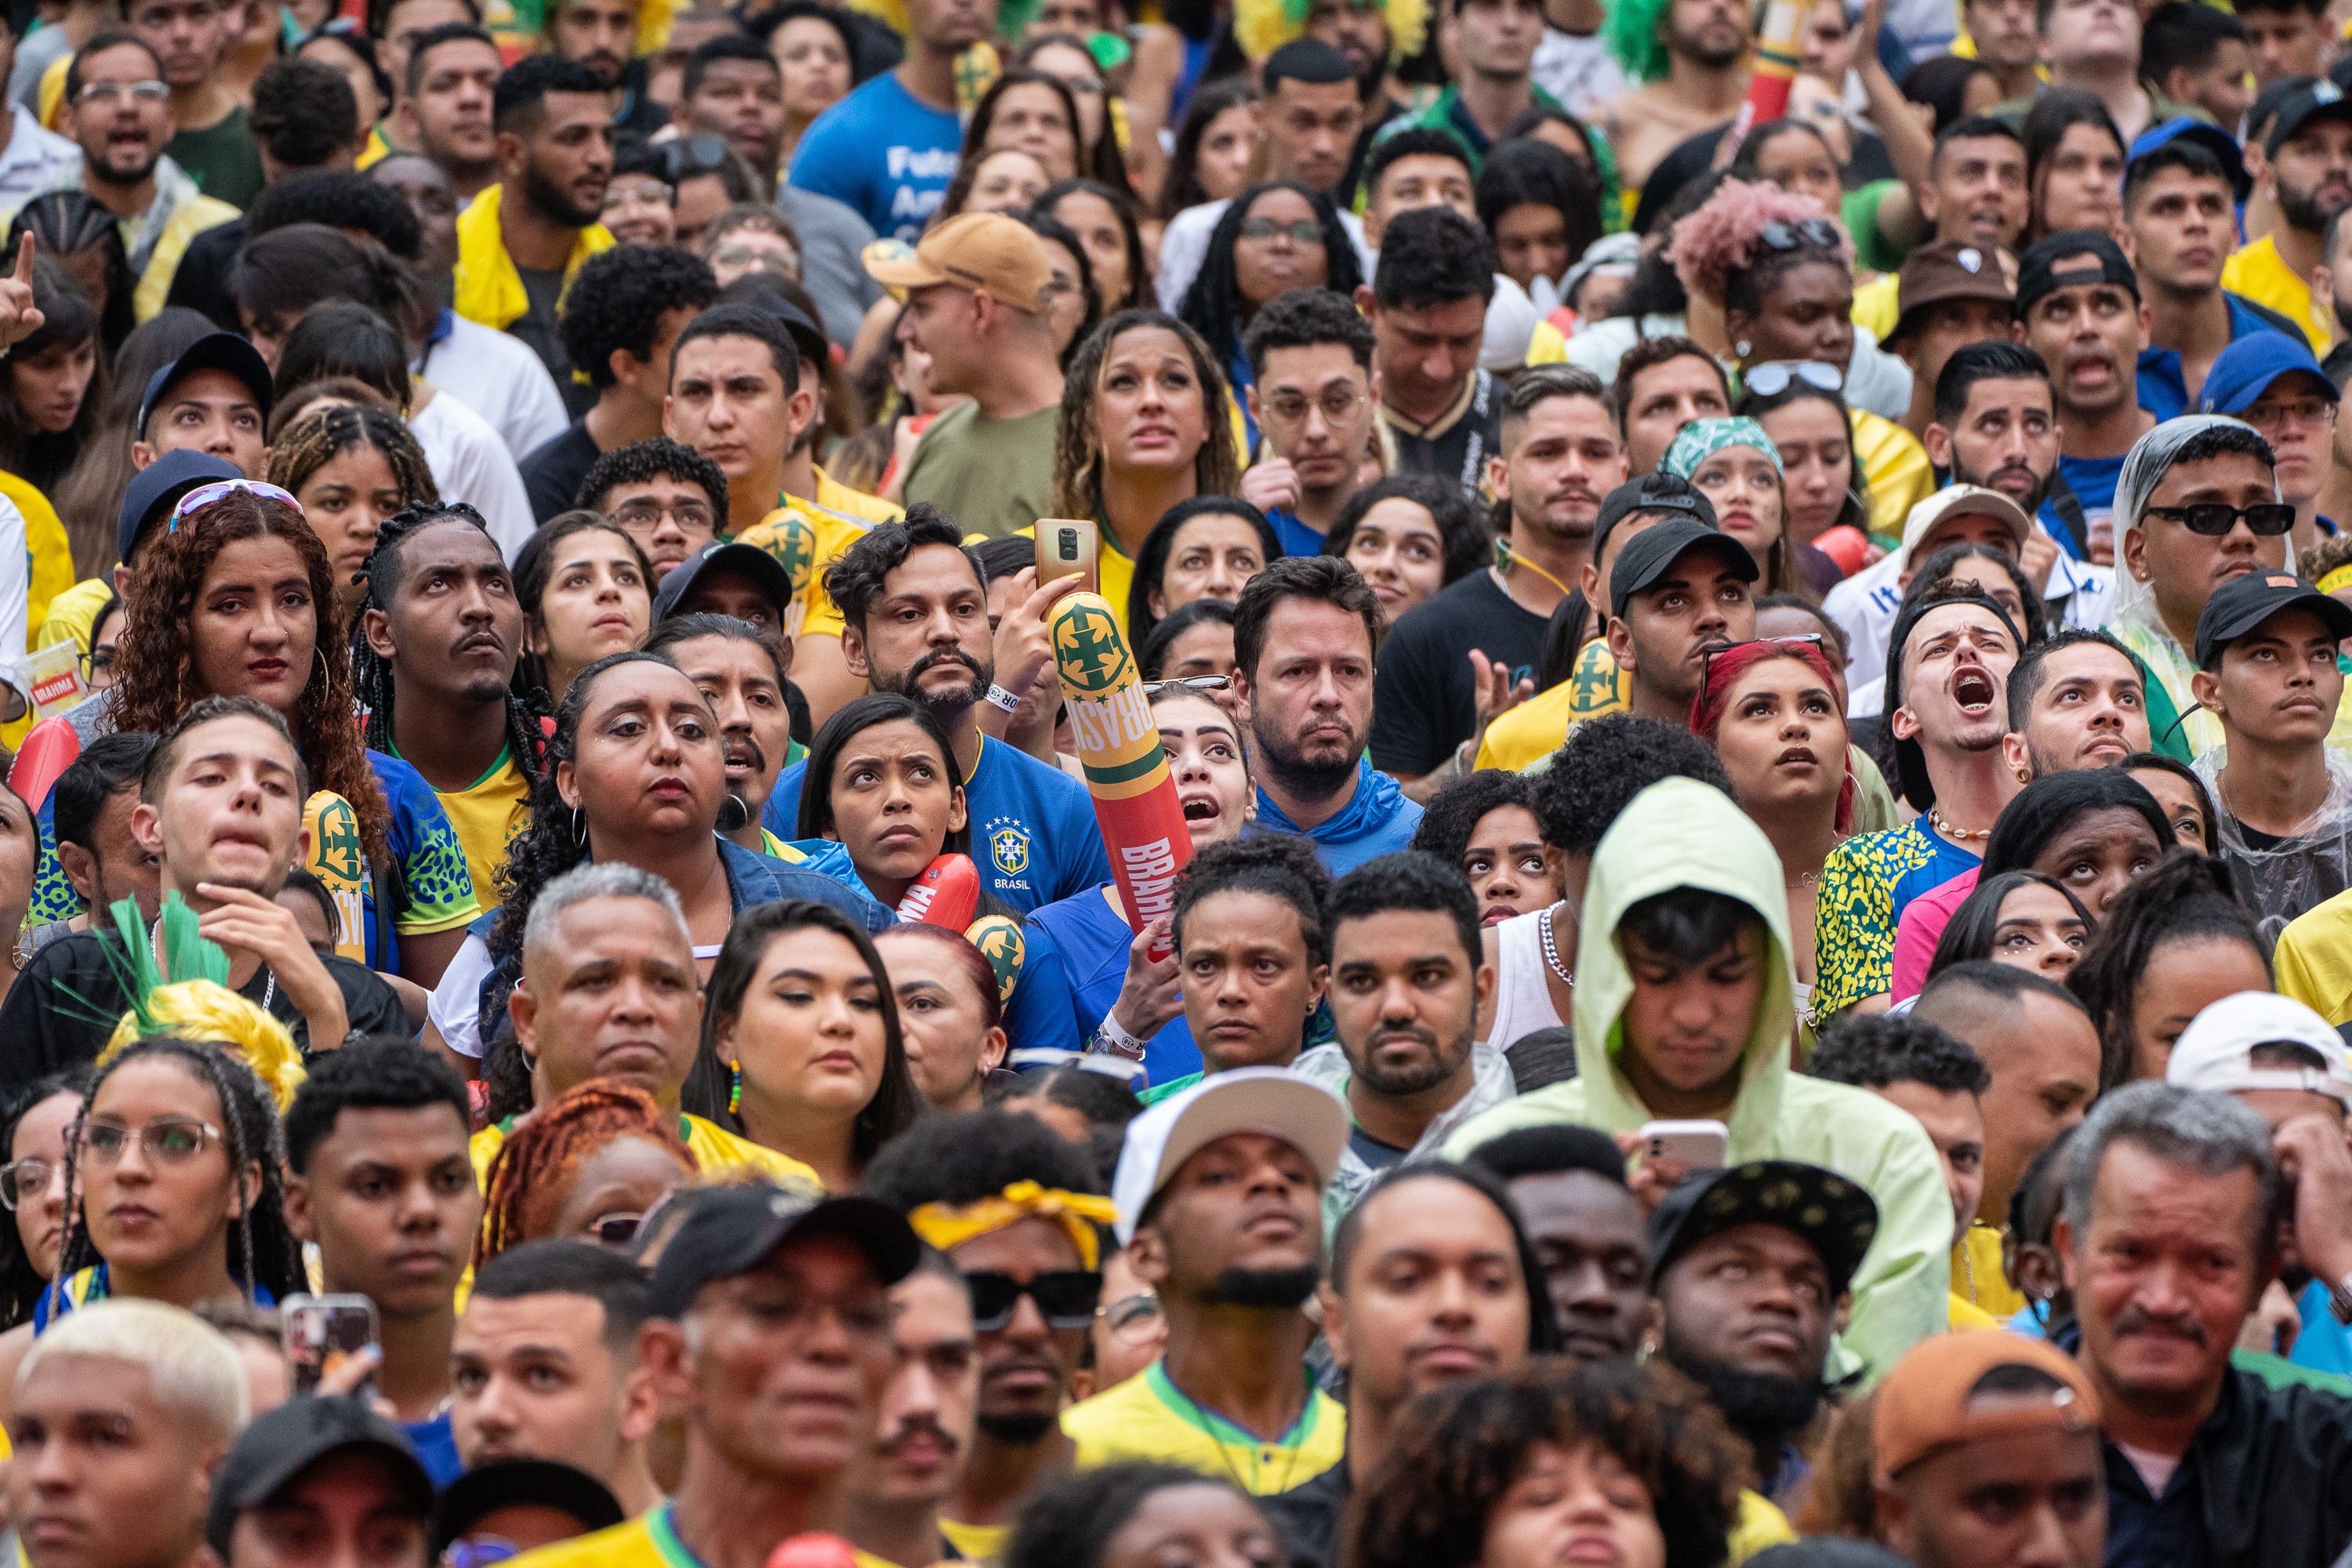 Brasil perde para Camarões e desanima torcedores na 'Fan Fest' do Vale do Anhangabaú, no Centro de SP; FOTOS